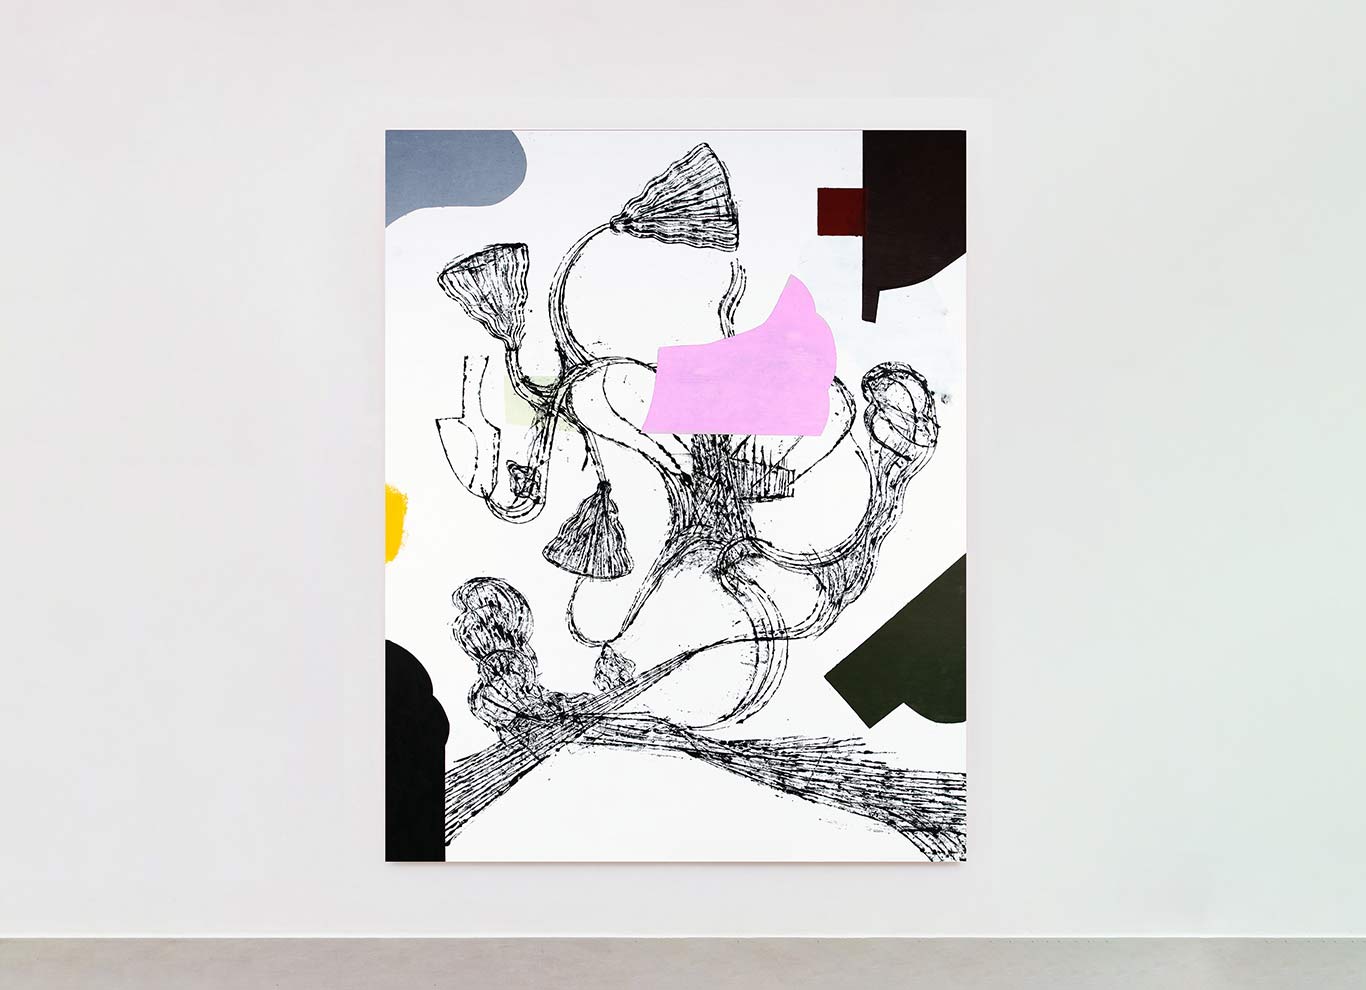 Galeria Lume apresenta “Mudanças sutis e um pensamento afirmativo”, individual de Paulo Whitaker